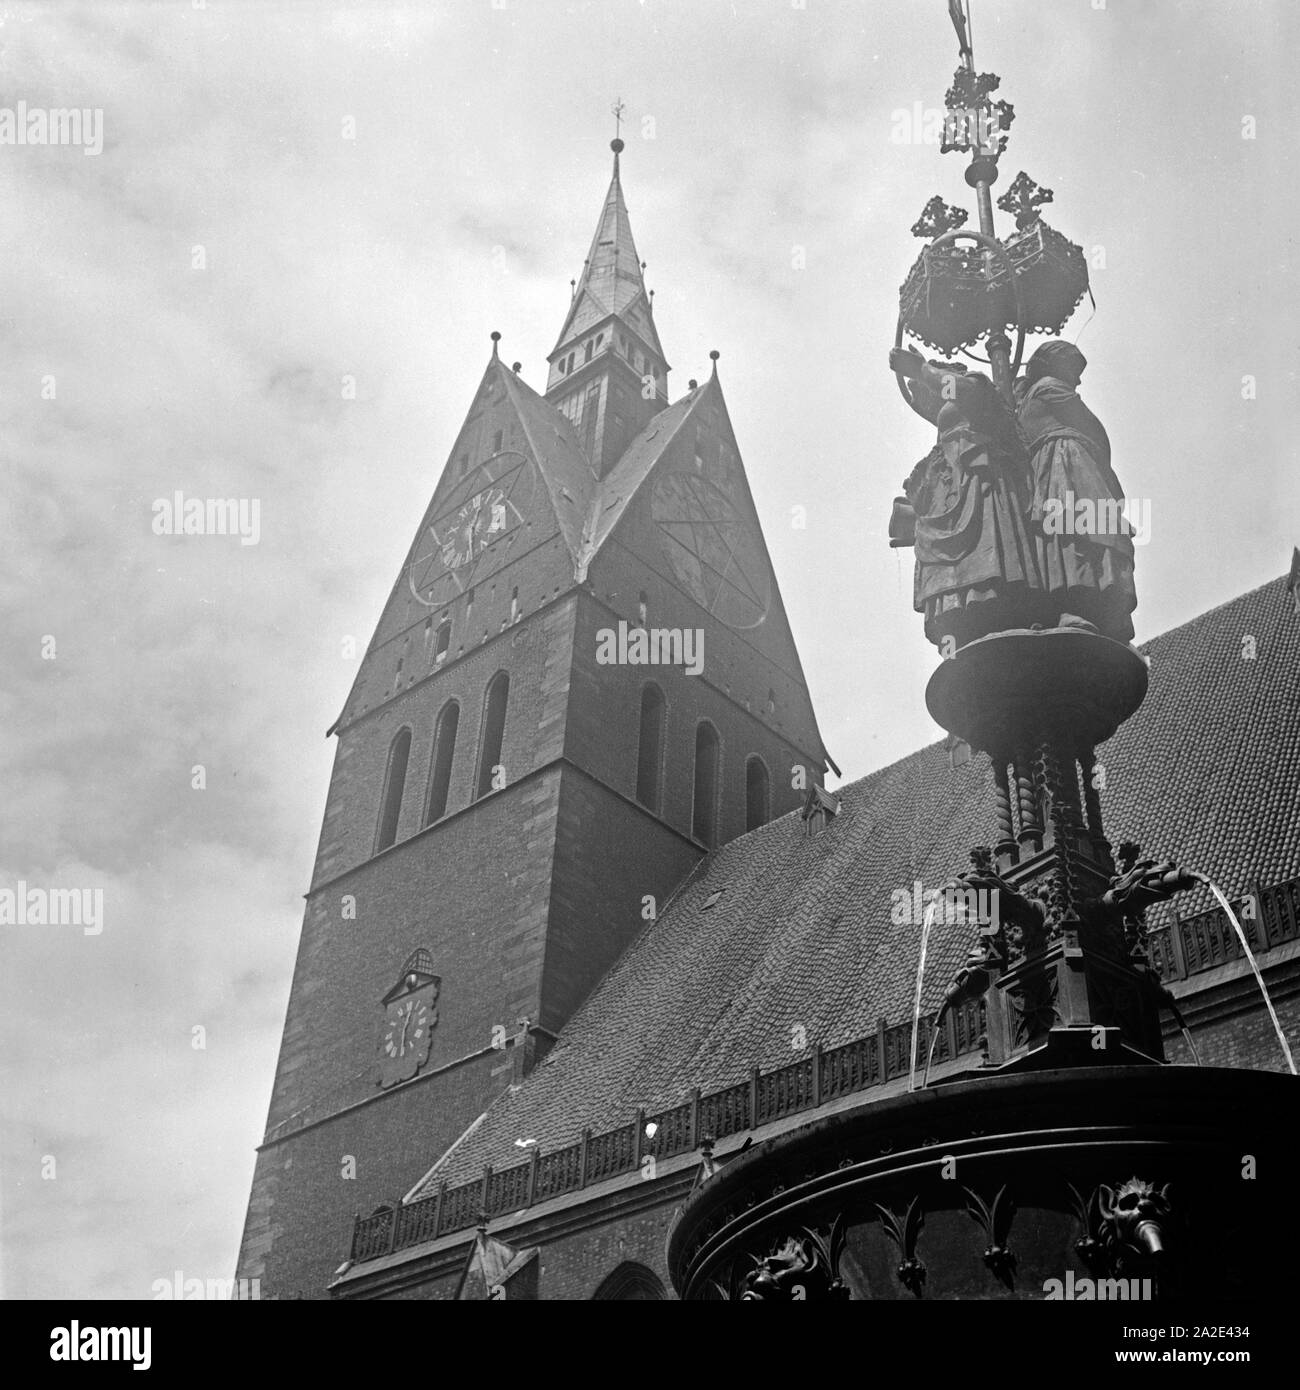 Der Turm der Marktkirche San Georgii et Jacobi in der Altstadt von Hannover, Deutschland 1930er Jahre. Il campanile di San Giorgio e san Jacob presso la vecchia città di Hannover, Germania 1930s. Foto Stock